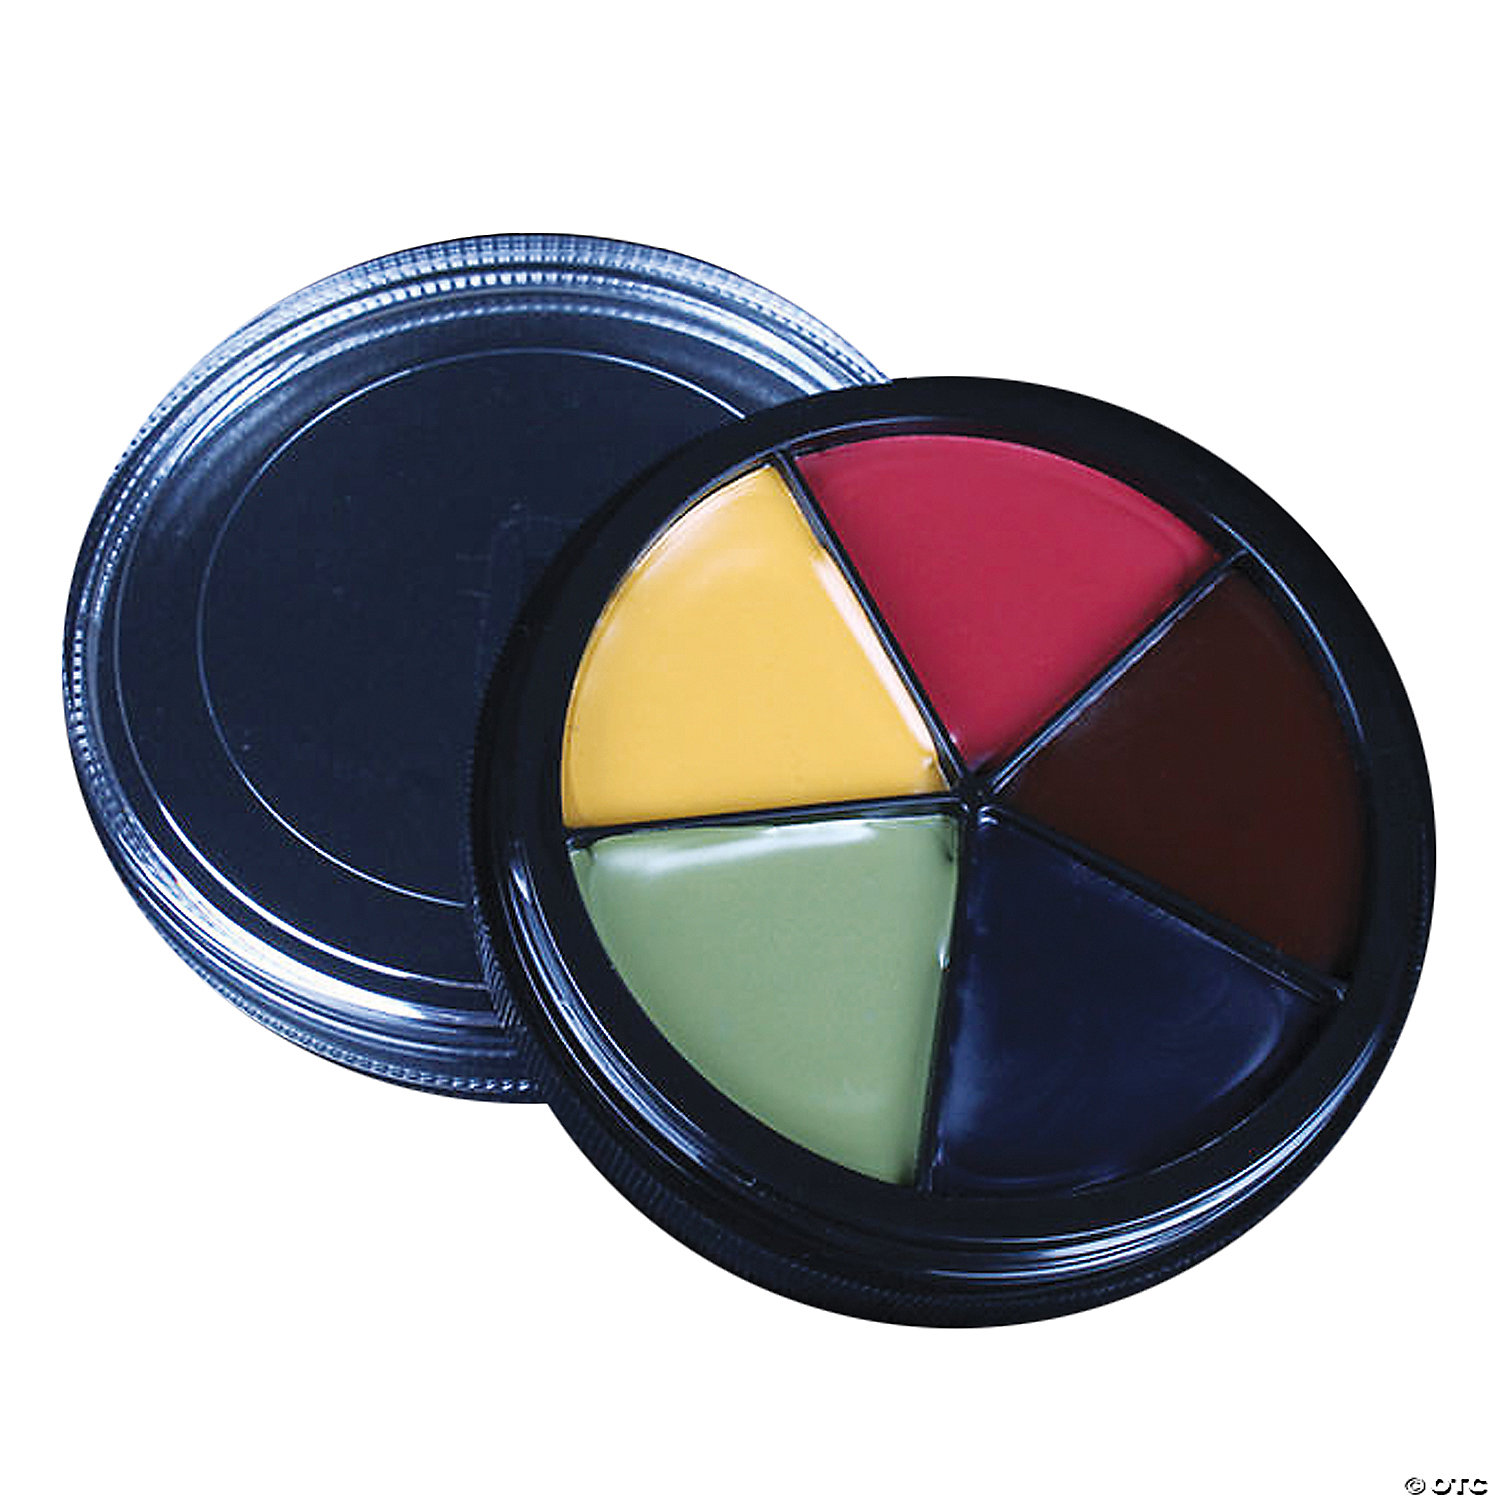 Mehron Bruise Tri-Color Makeup Palette